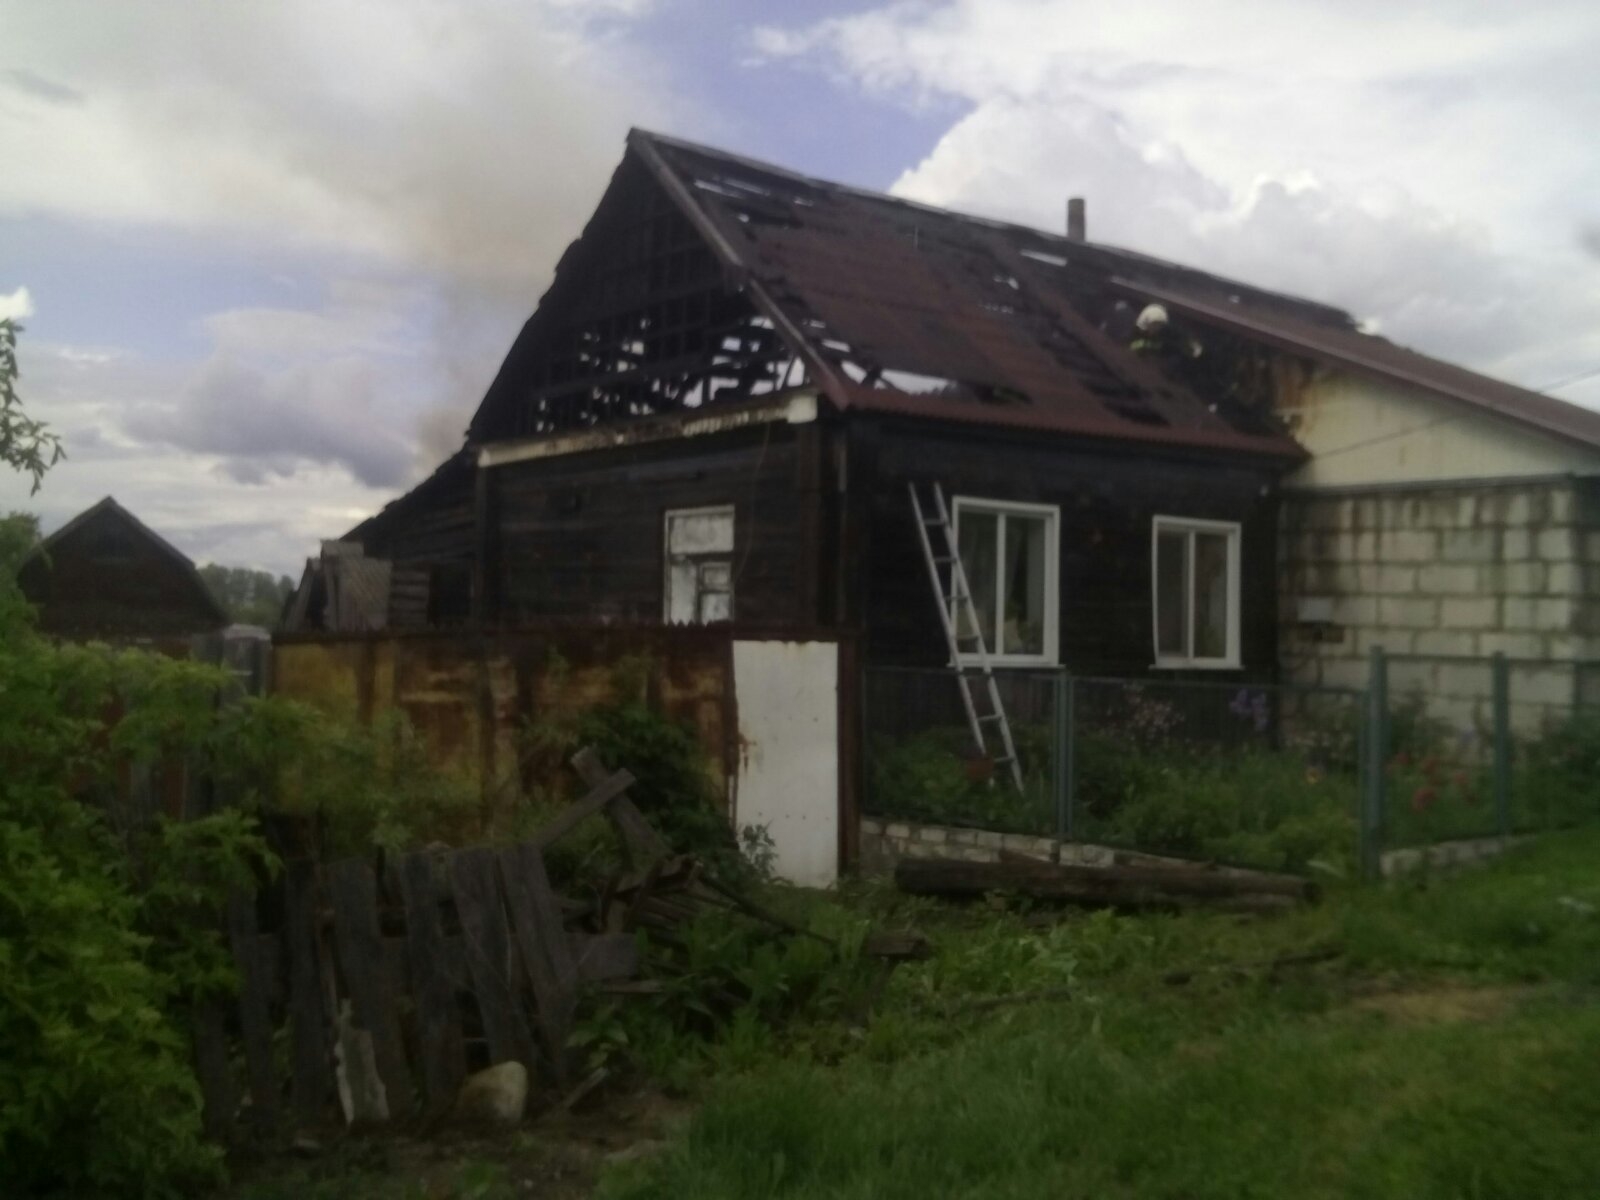 В Севске сгорел жилой дом